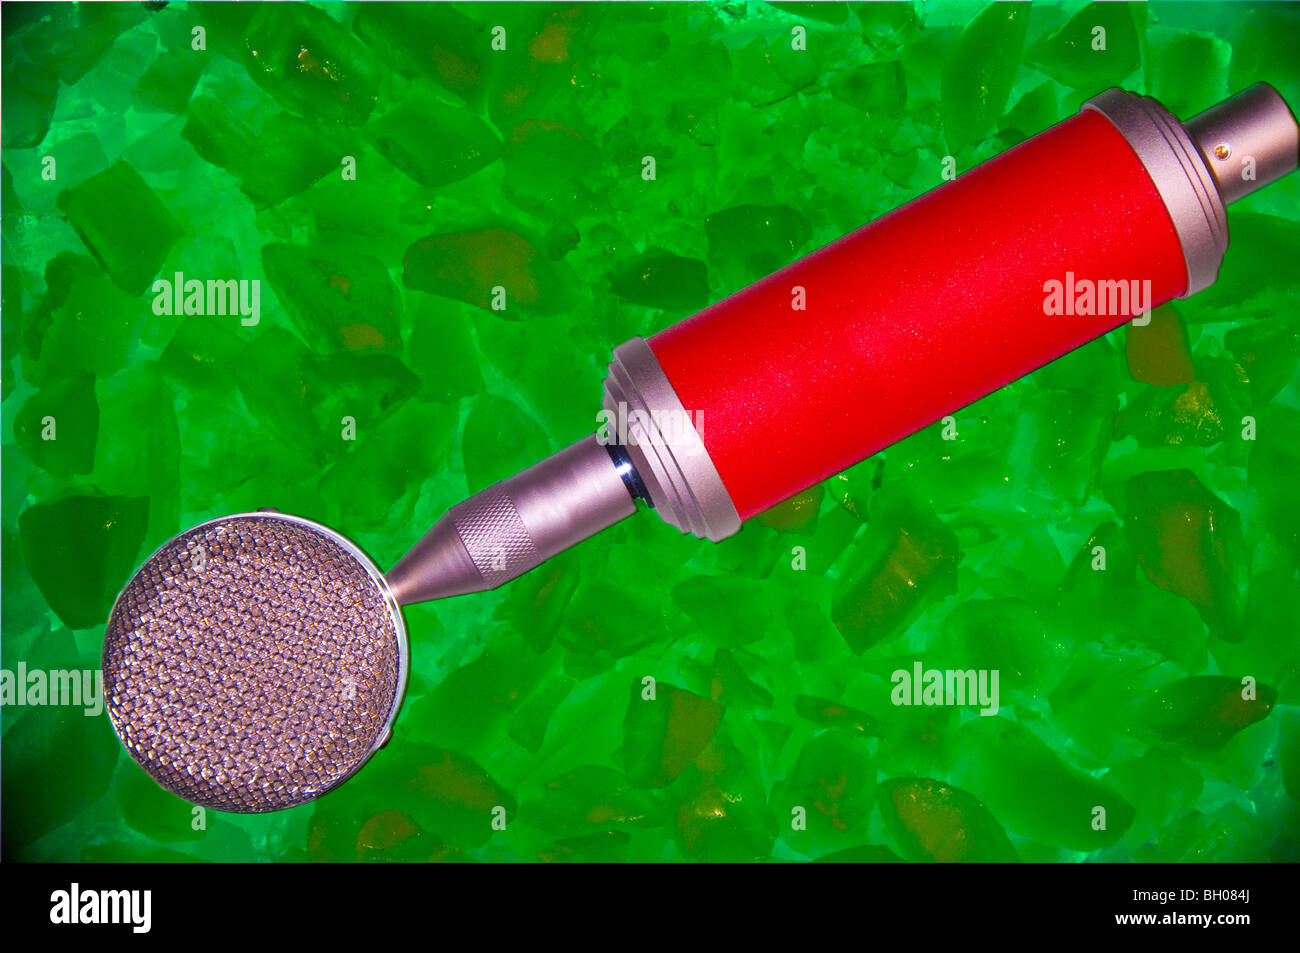 Roten Mikrofon sitzt auf einem Bett aus grünen Eis.  Logos entfernt, damit für jeden Einsatz. Stockfoto